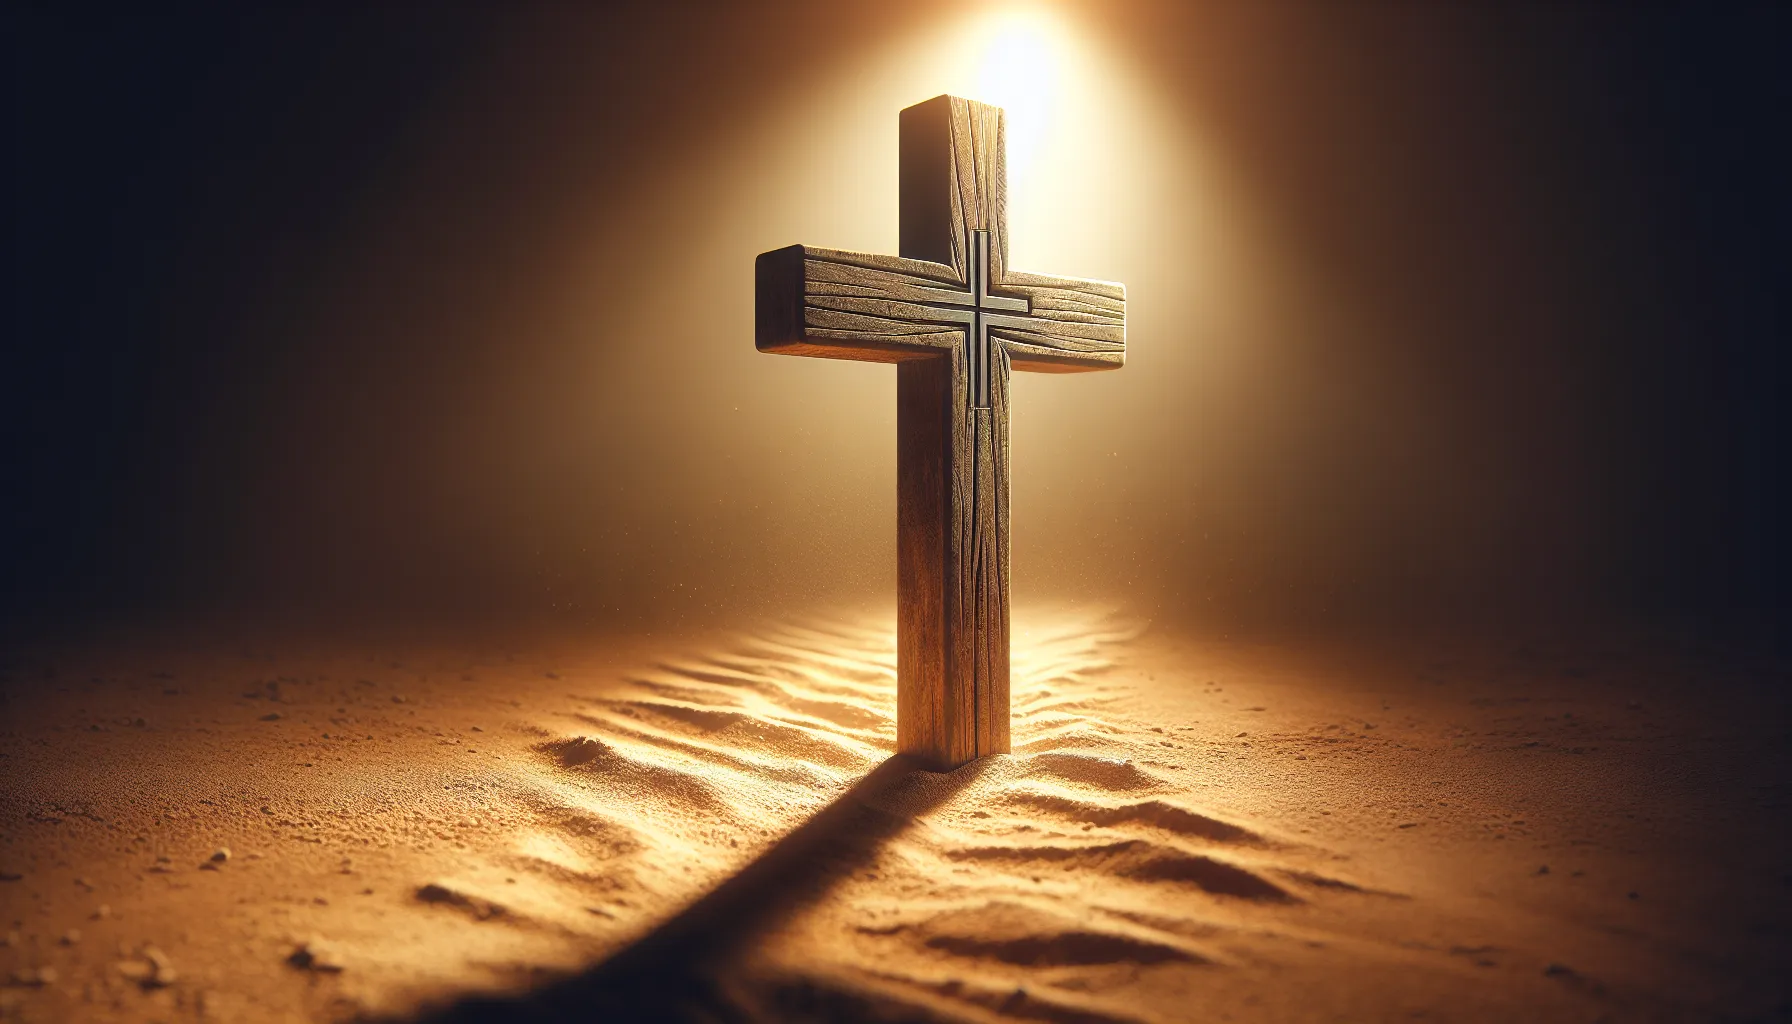 Símbolo de fe: una cruz de madera sobre un camino polvoriento